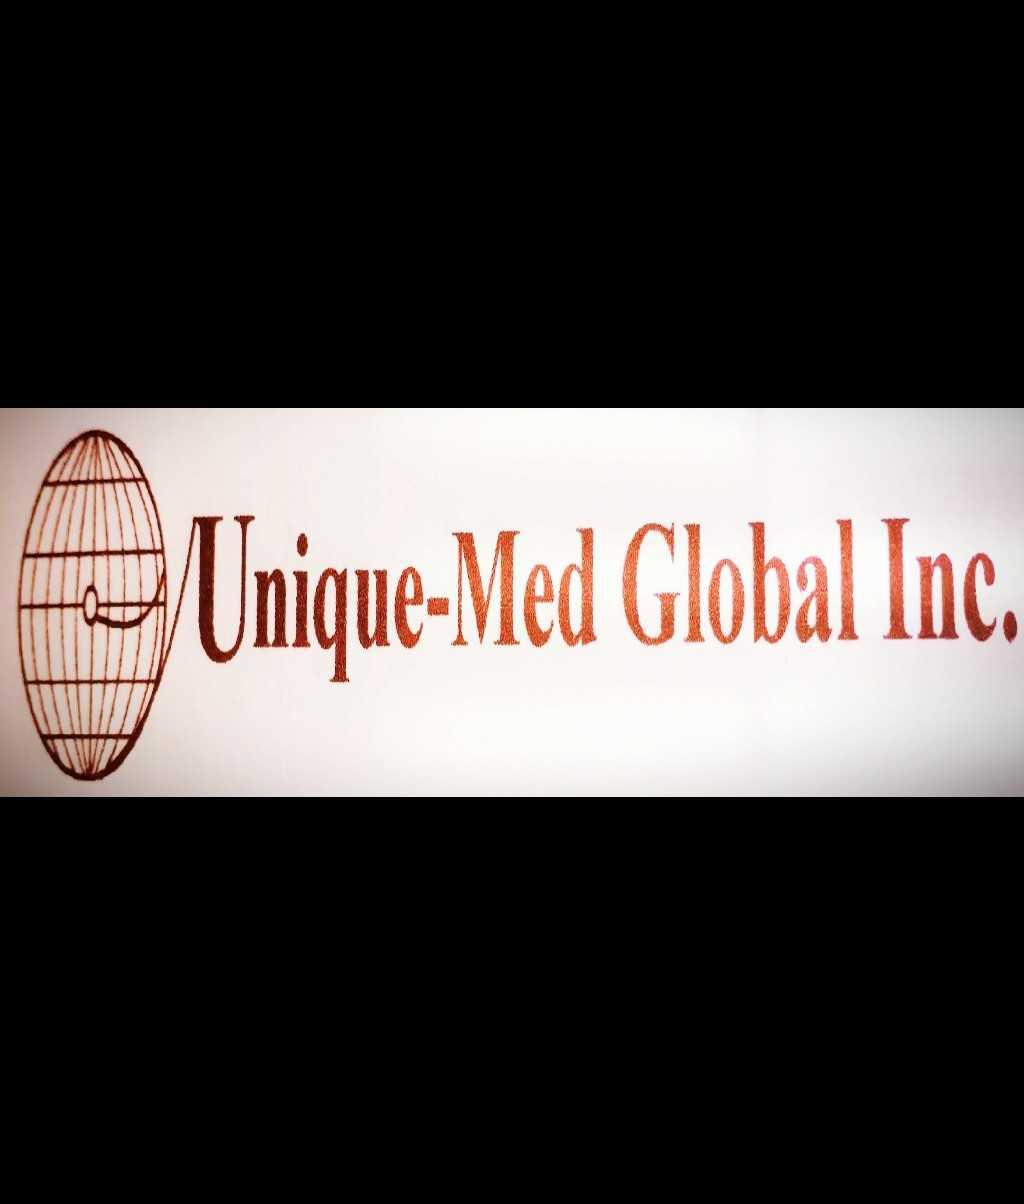 Unique Med Global Inc.